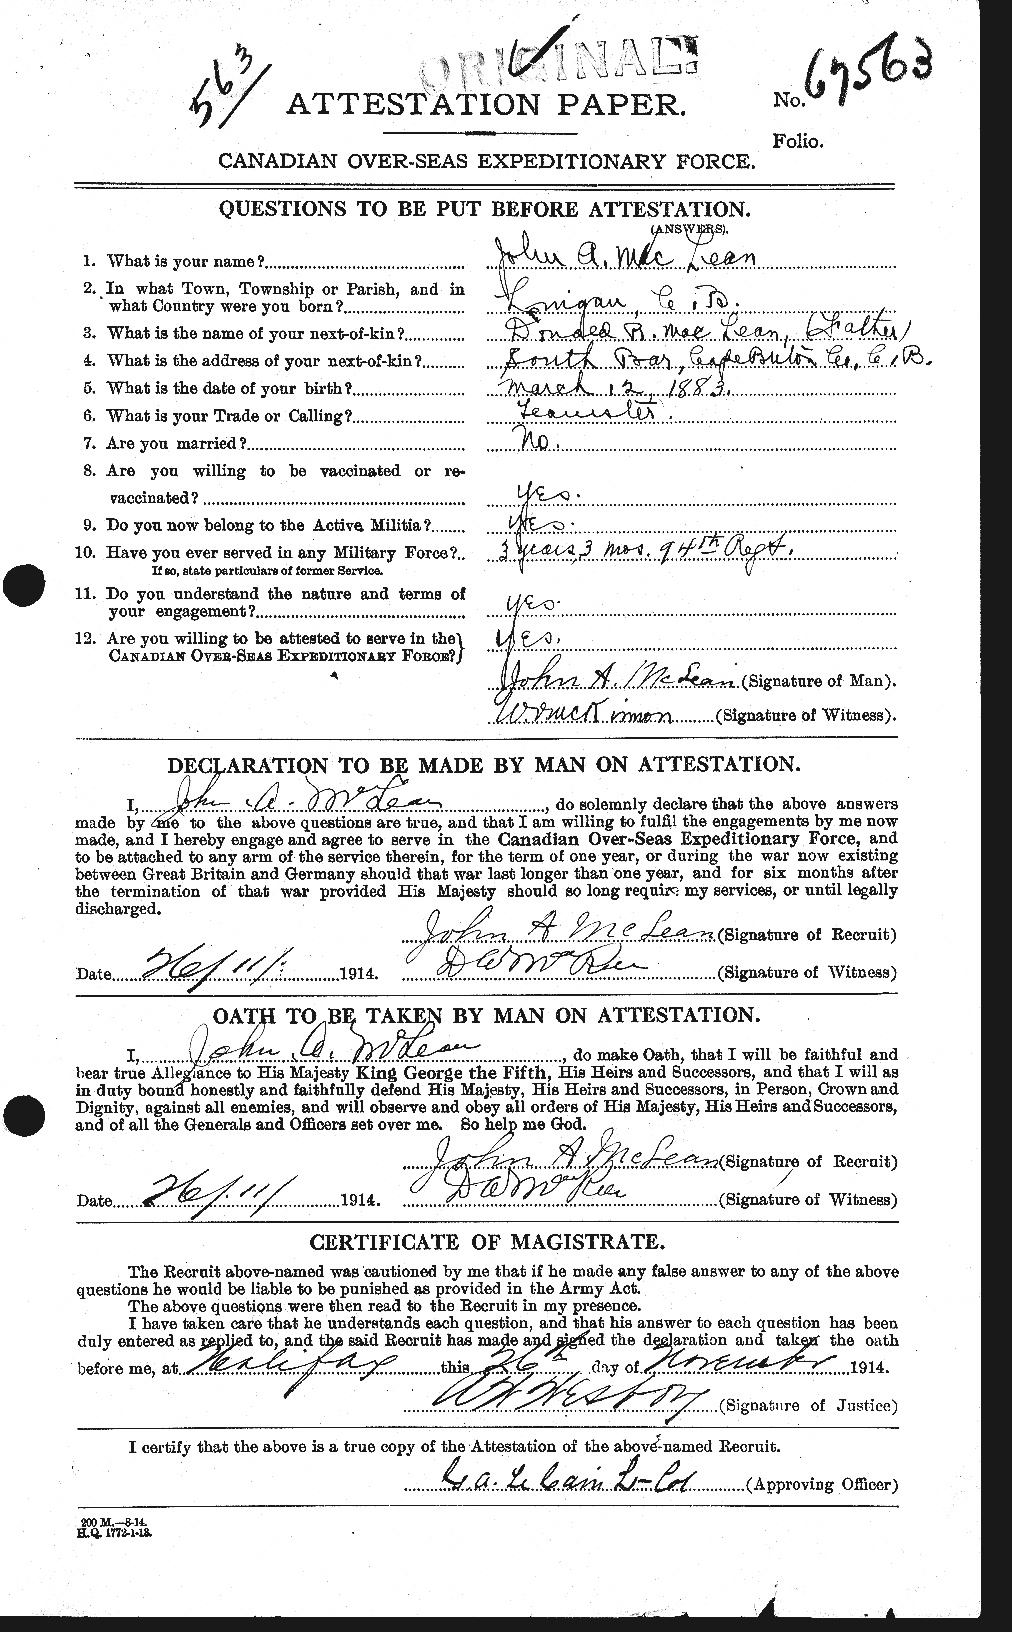 Dossiers du Personnel de la Première Guerre mondiale - CEC 531771a